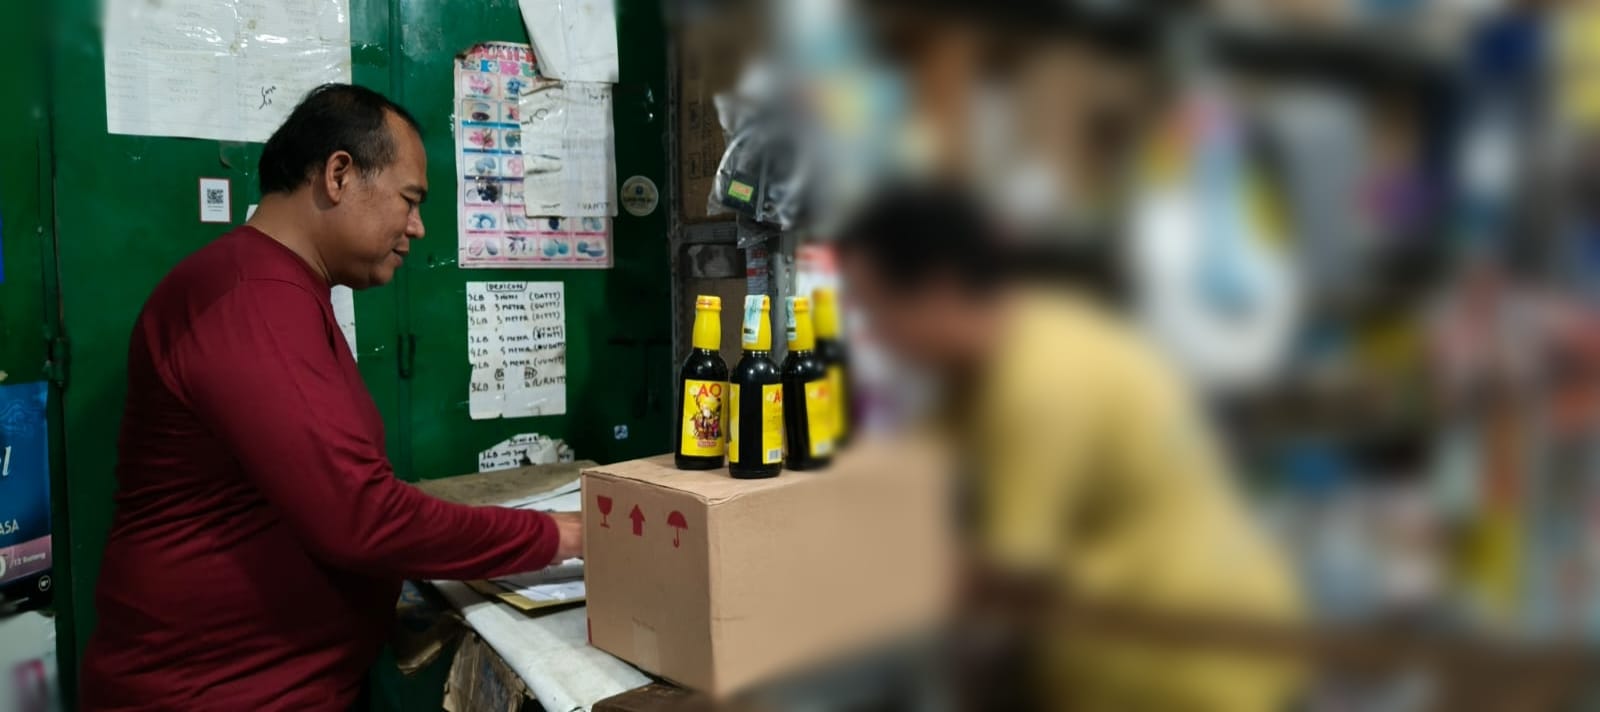 60 Botol Miras Disita Polisi saat Malam Idul Adha di Tegal, Penjualnya Bakal Ditindak